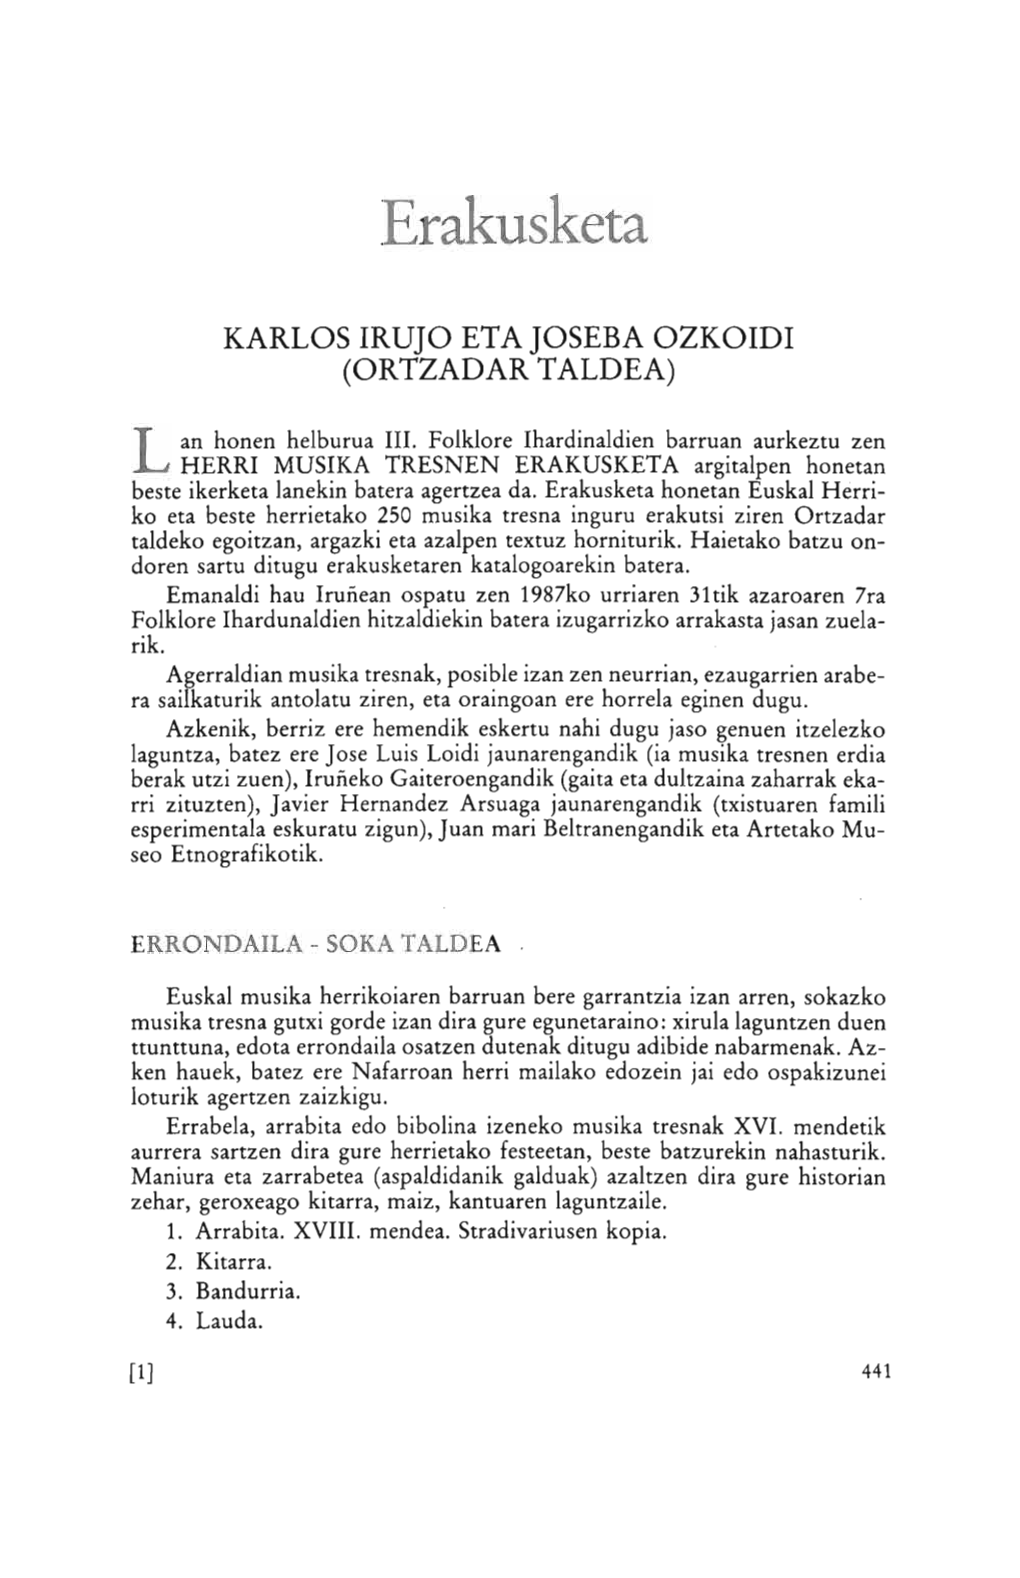 Karlos Irujo Eta Joseba Ozkoidi (Ortzadar Taldea)